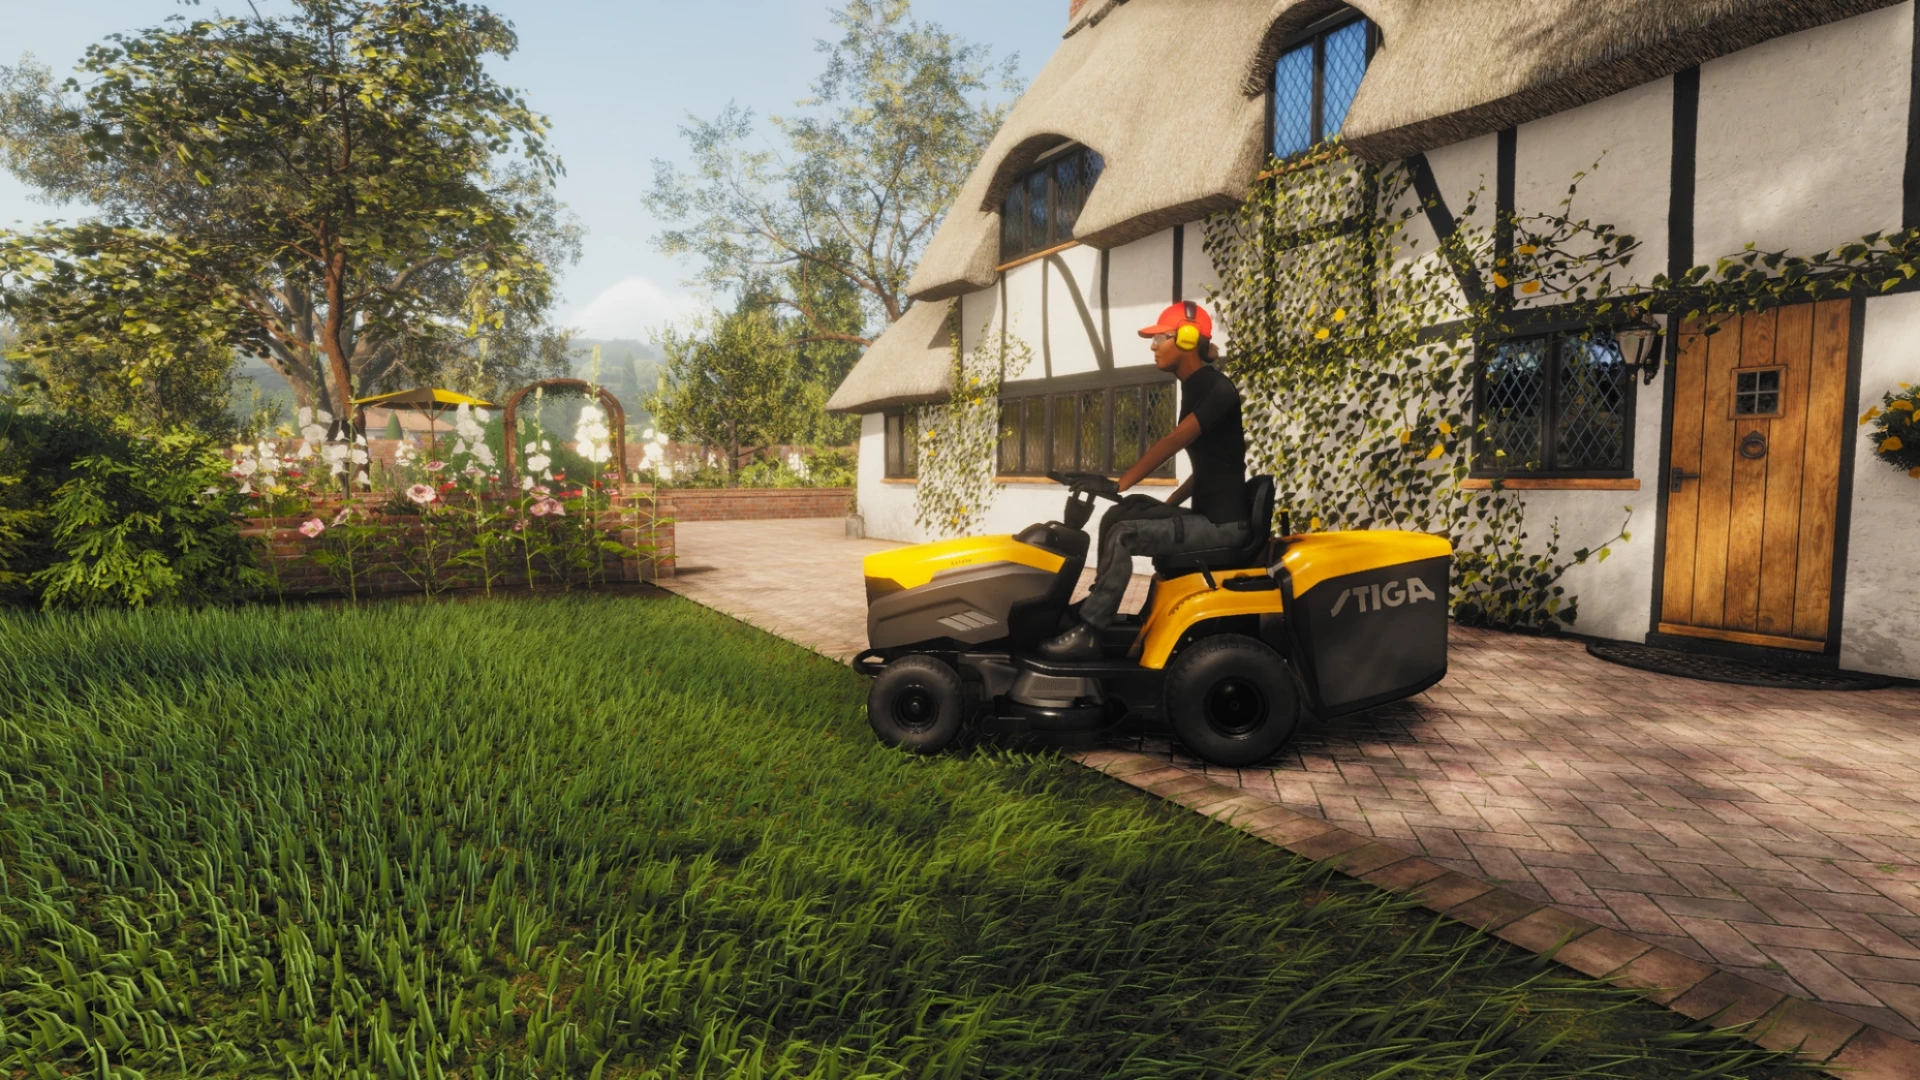 Lawn Mowing Simulator Landmark Edition voor de PlayStation 4 kopen op nedgame.nl